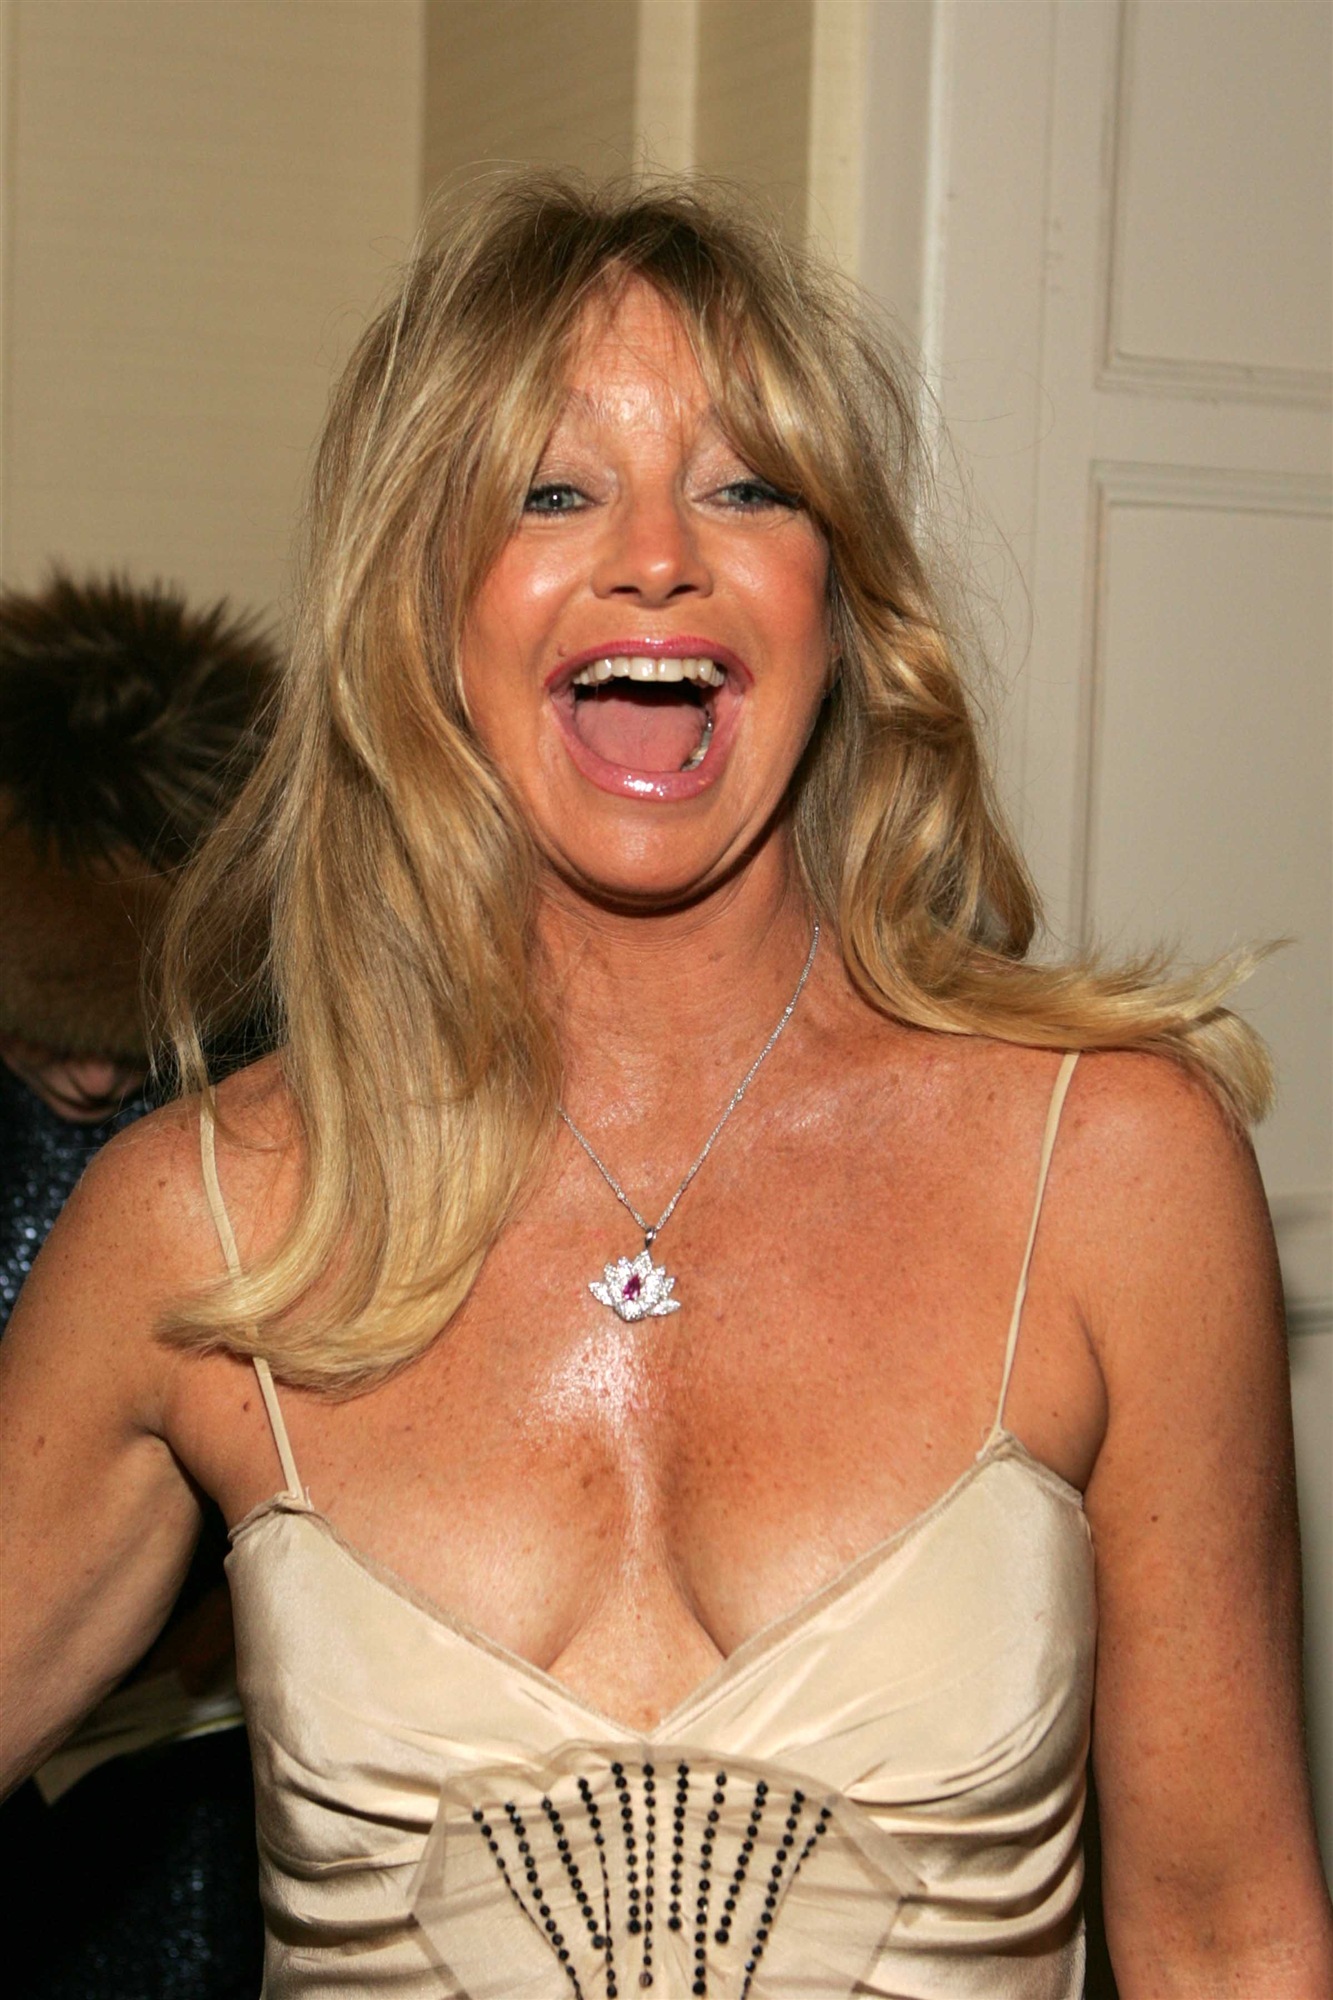 Goldie Hawn leaked wallpapers